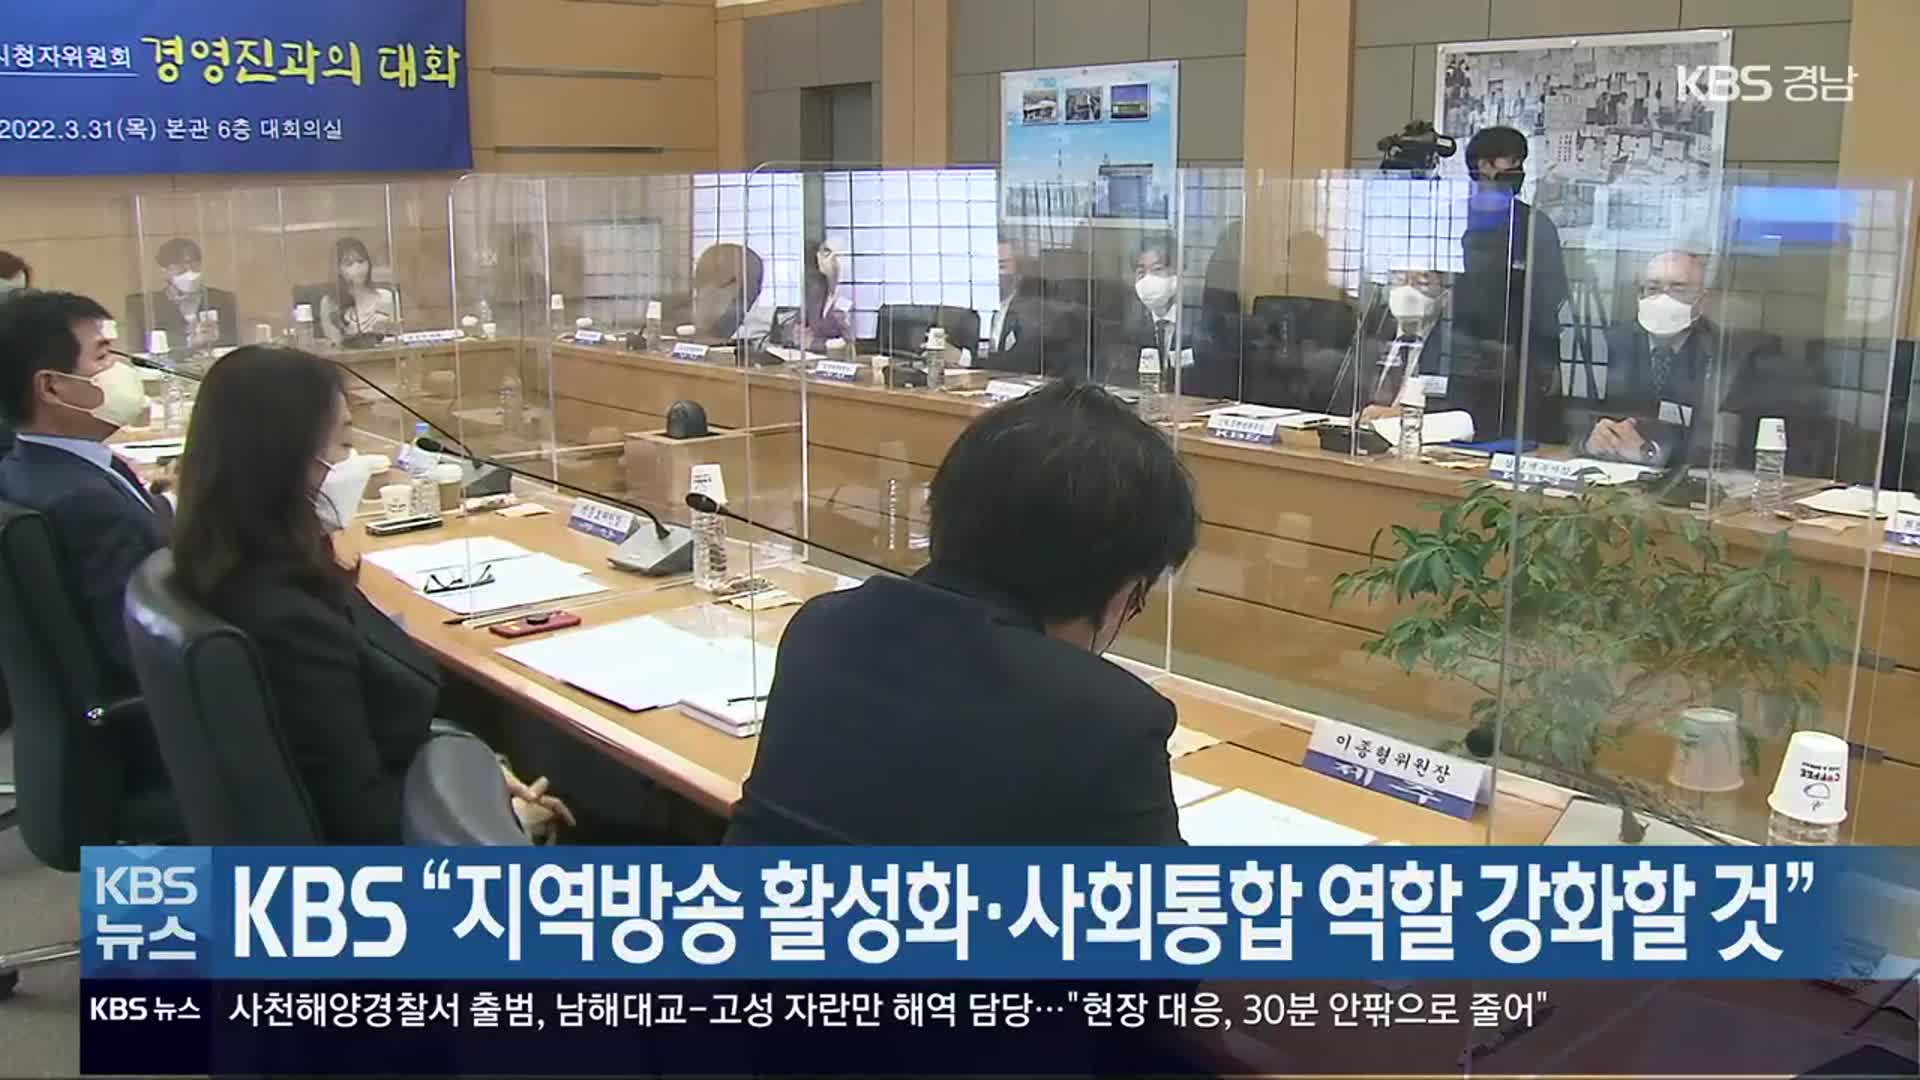 KBS “지역방송 활성화·사회통합 역할 강화할 것”